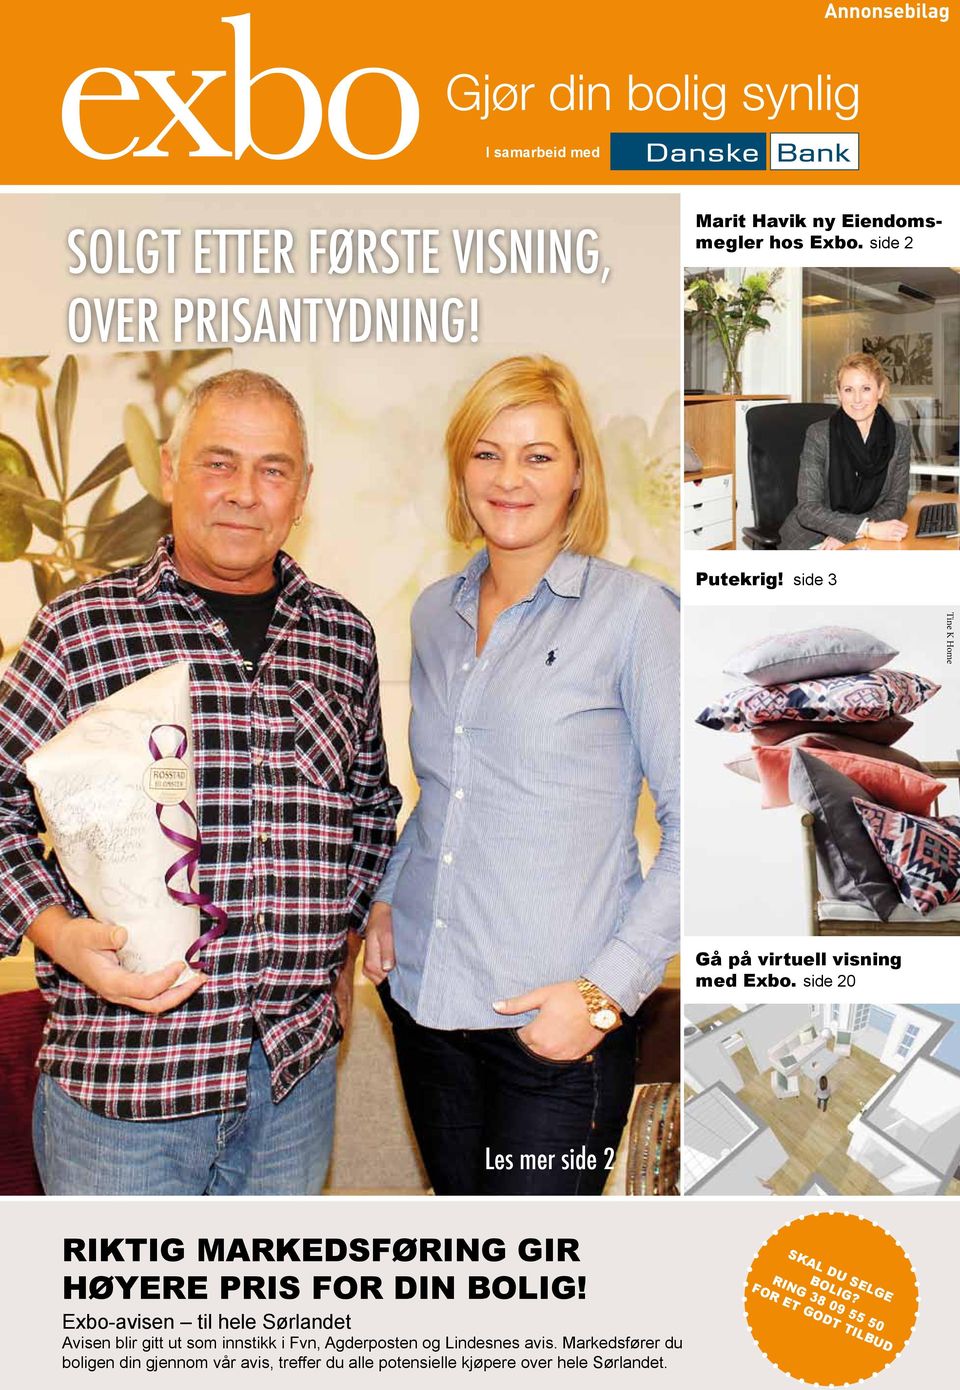 Exbo-avisen til hele Sørlandet Avisen blir gitt ut som innstikk i Fvn, Agderposten og Lindesnes avis.